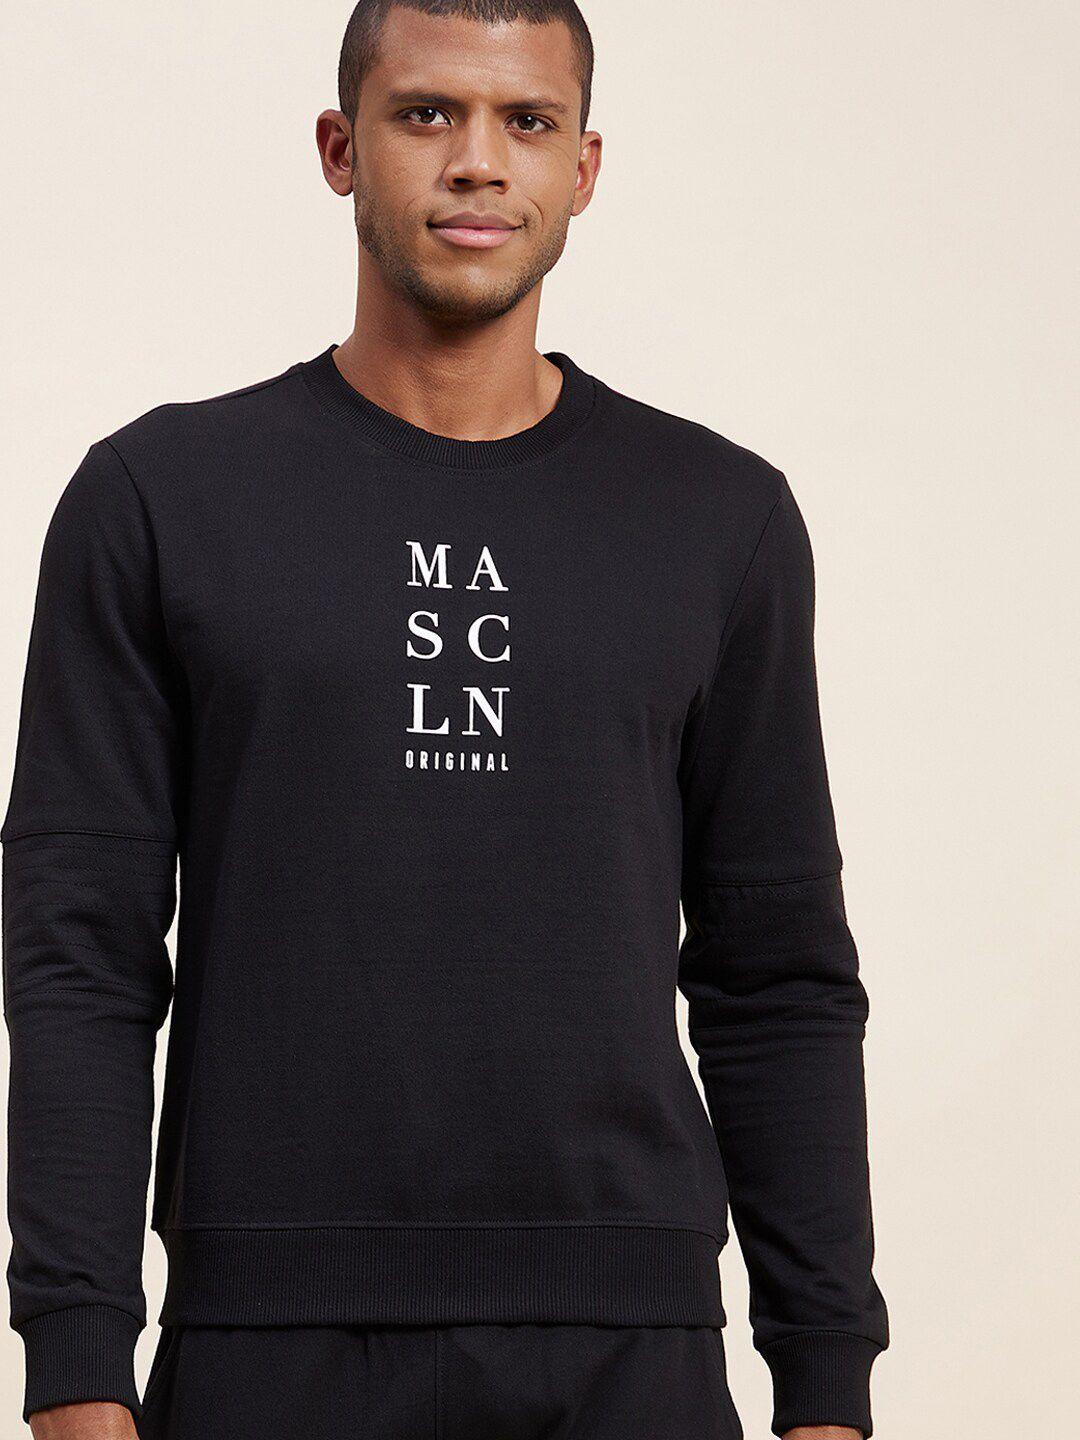 mascln sassafras men black printed sweatshirt